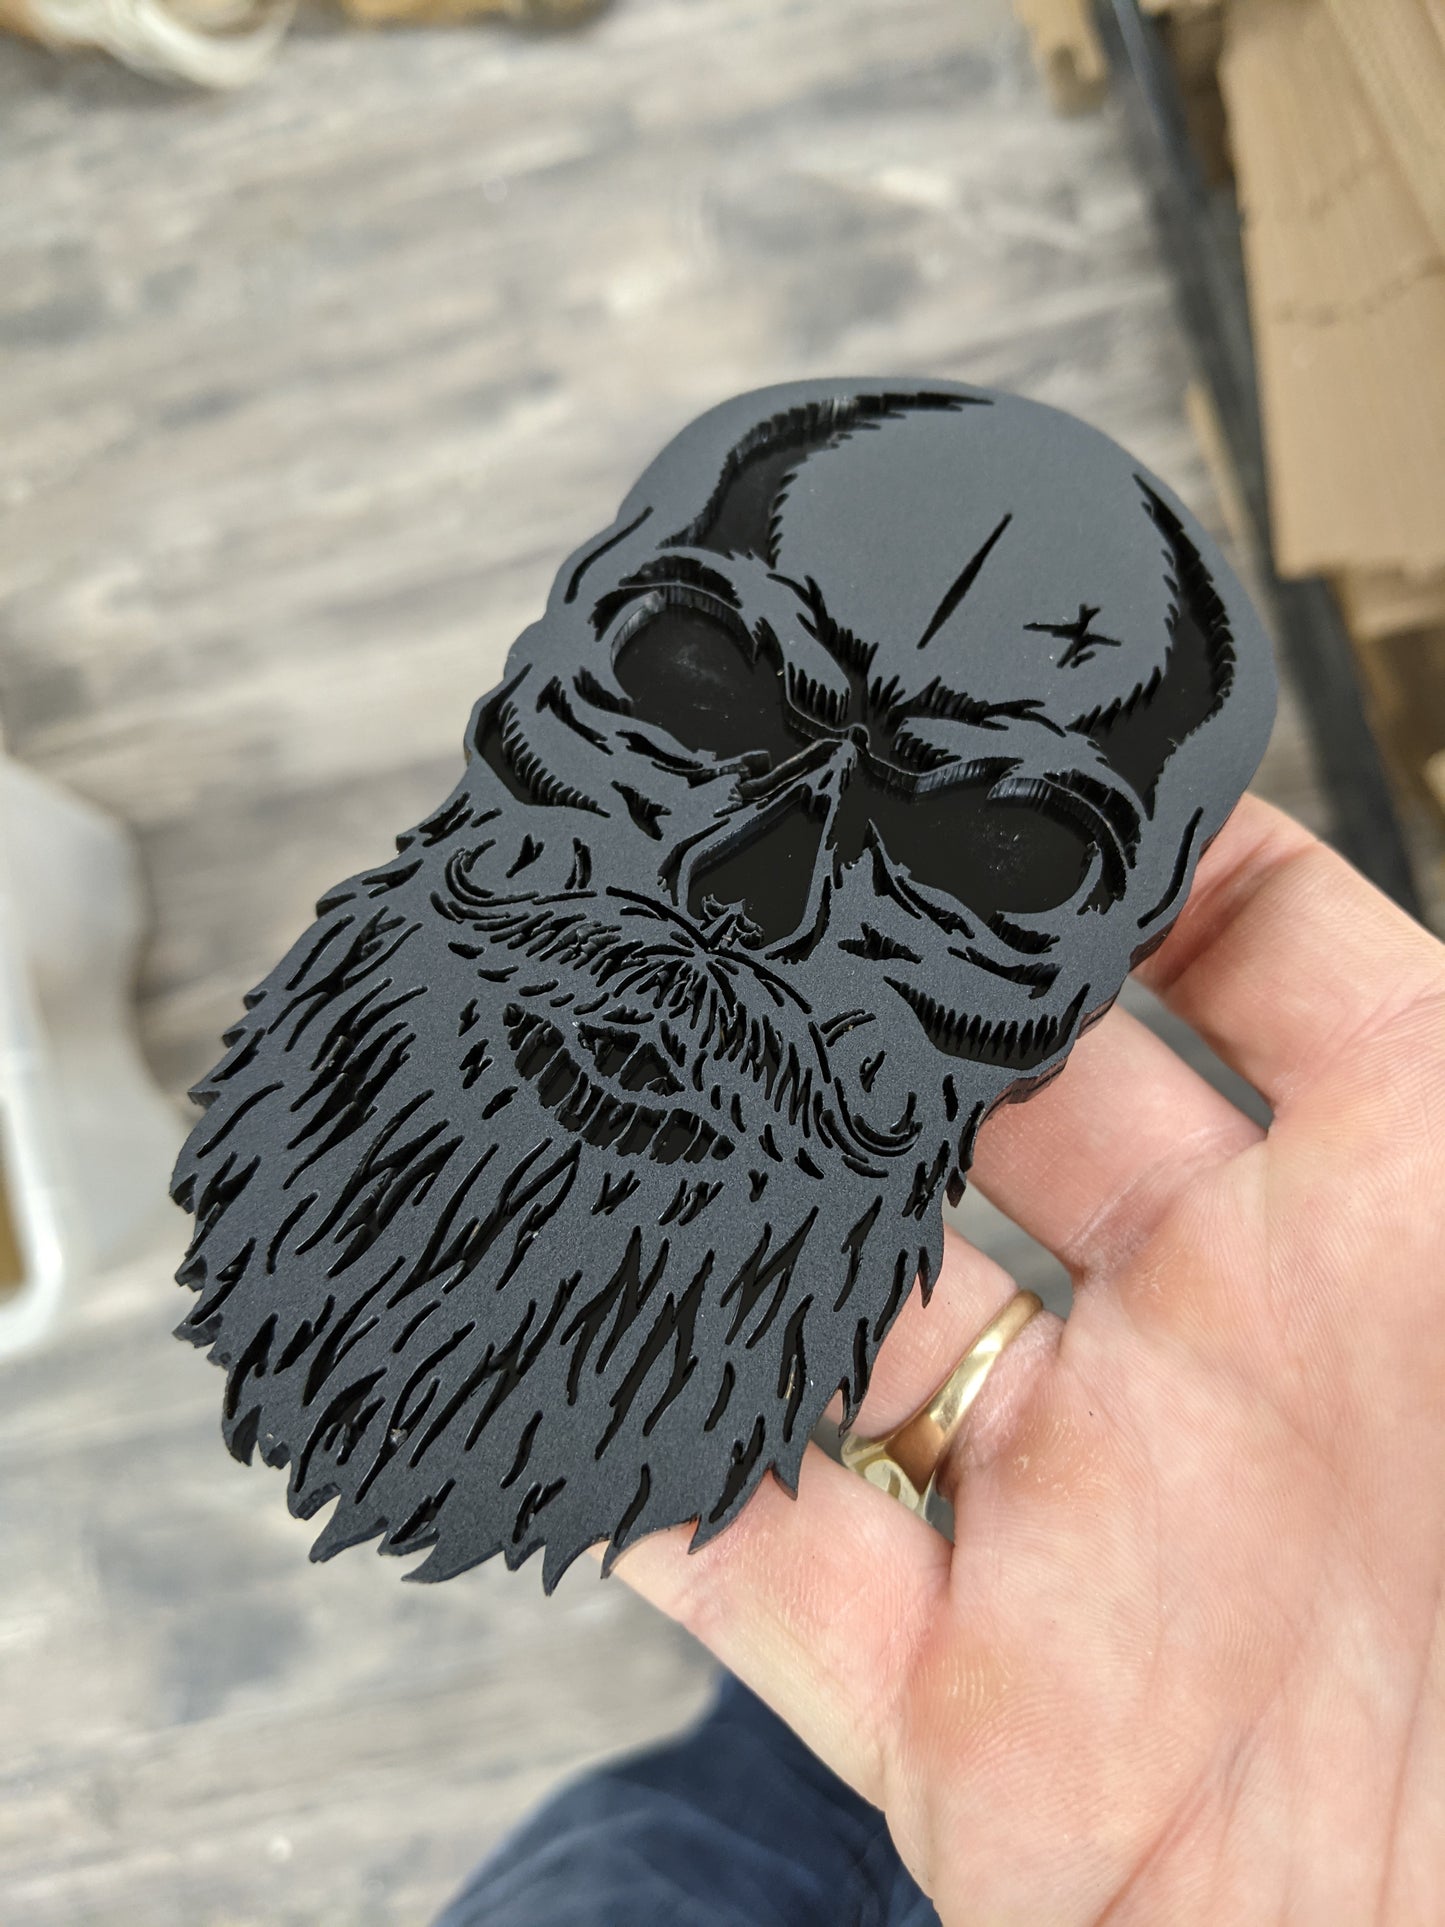 Custom Toolbox Drawer Emblems - Bearded Skull